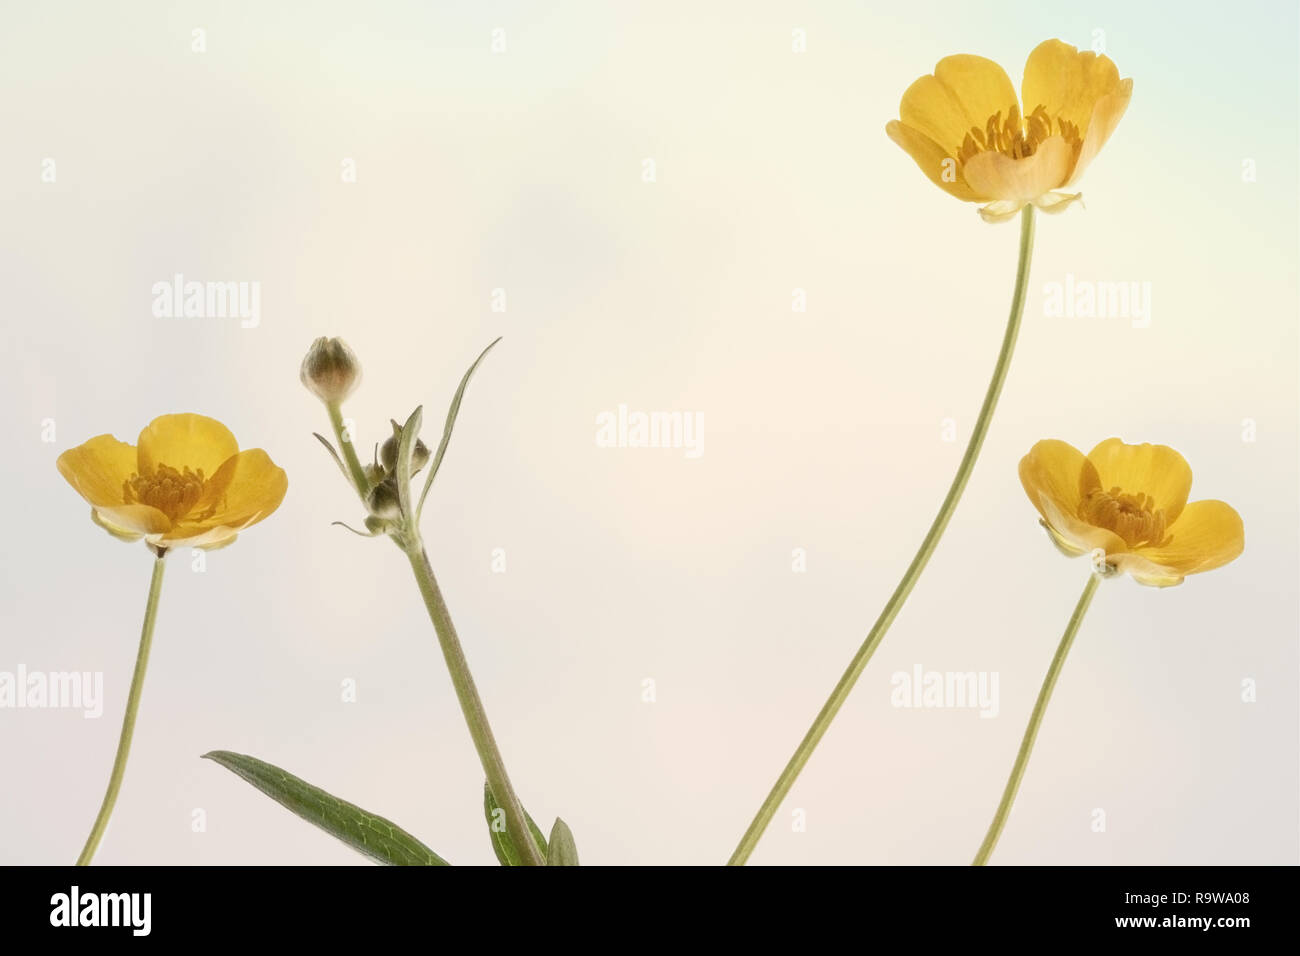 Piatto fotografia laici di ranuncolo giallo fiori insieme contro un sfondo pastello Foto Stock